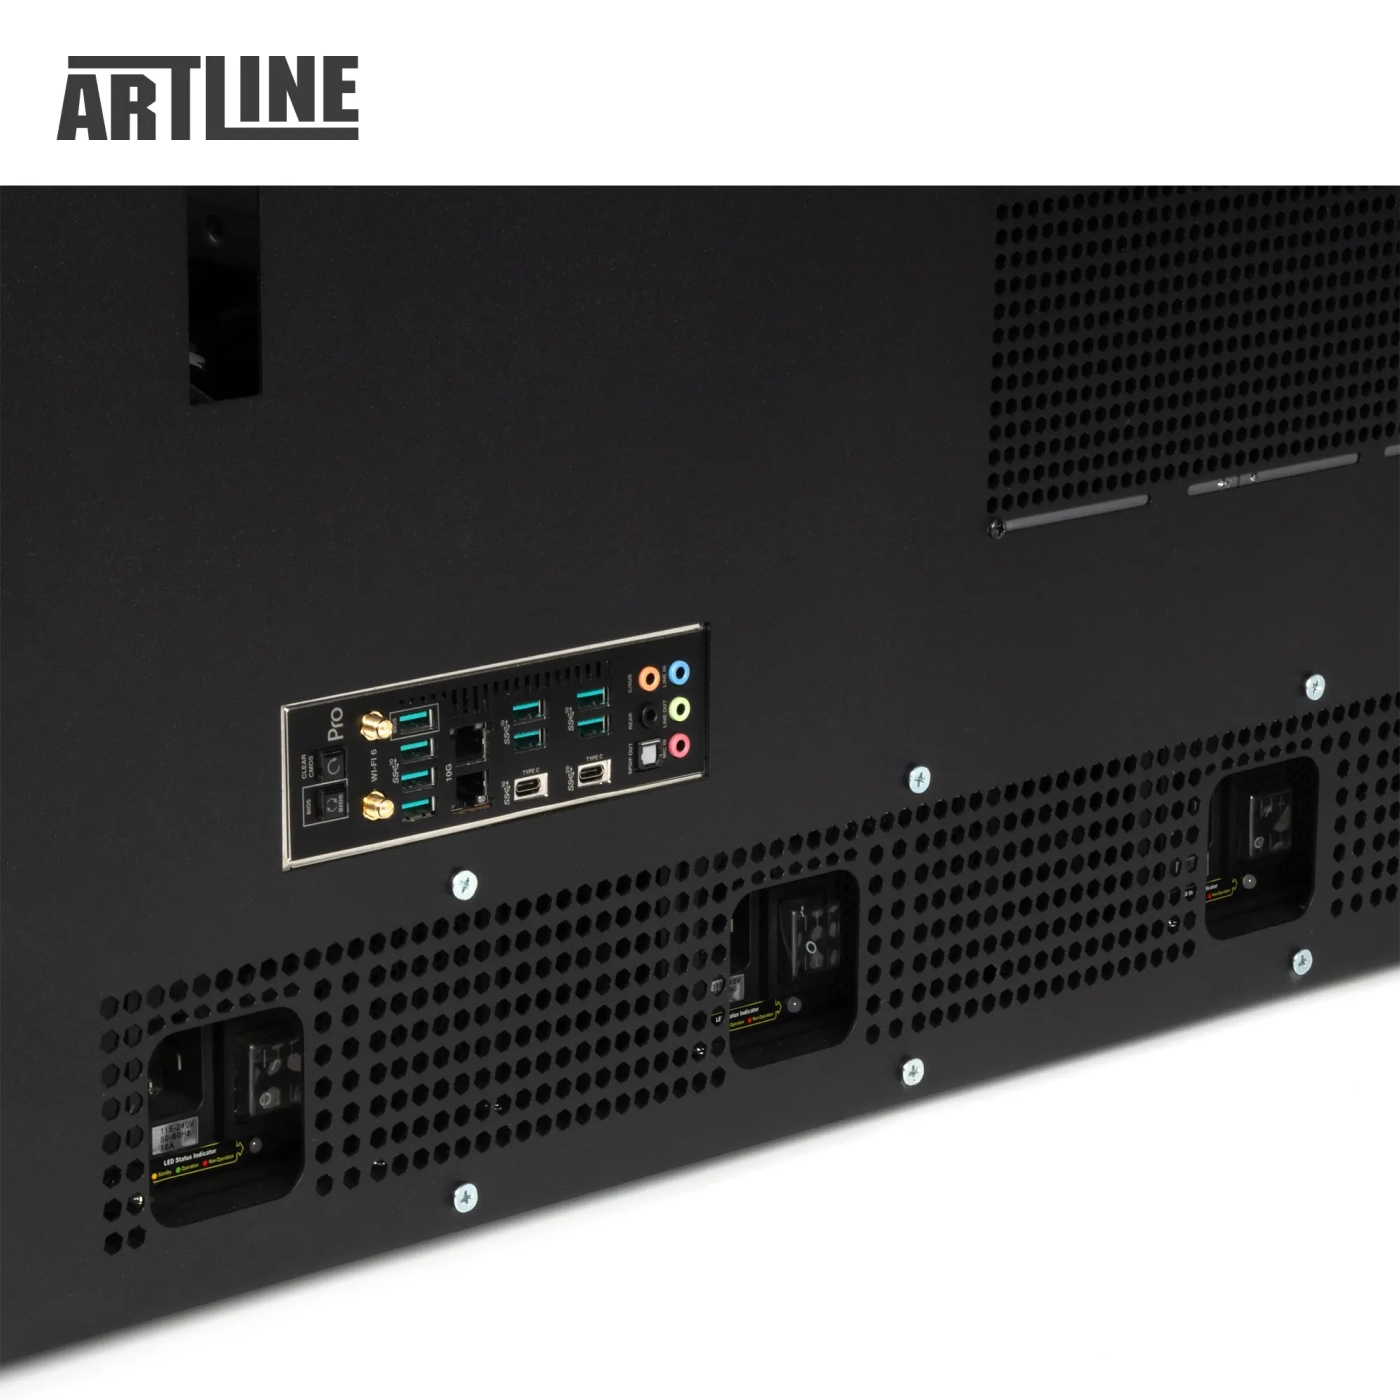 Купить Сервер ARTLINE Business R99 (R99v01) - фото 12